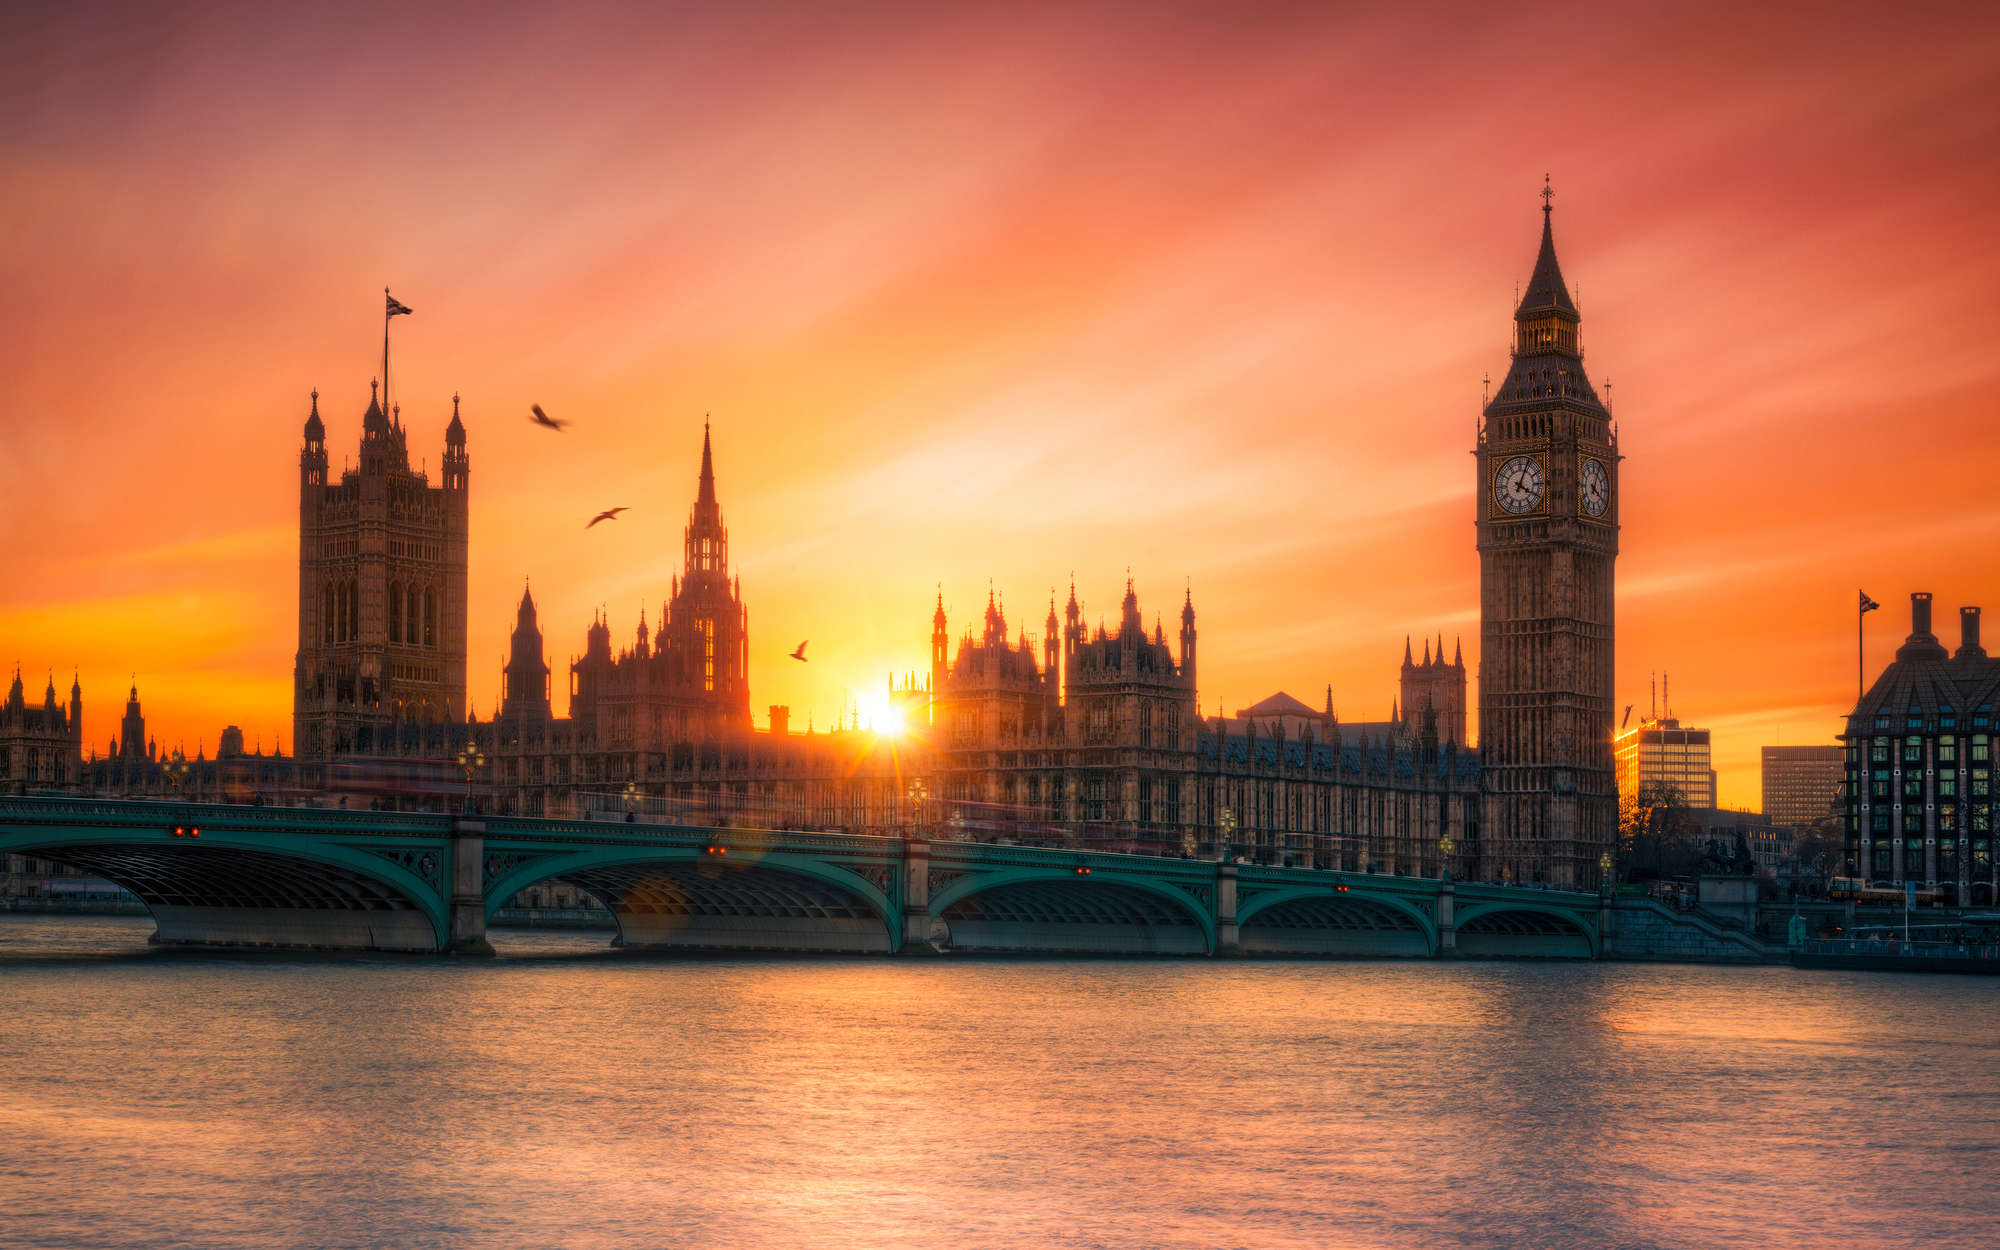             Digital behang Londen Skyline in de zonsondergang - Premium glad fleece
        